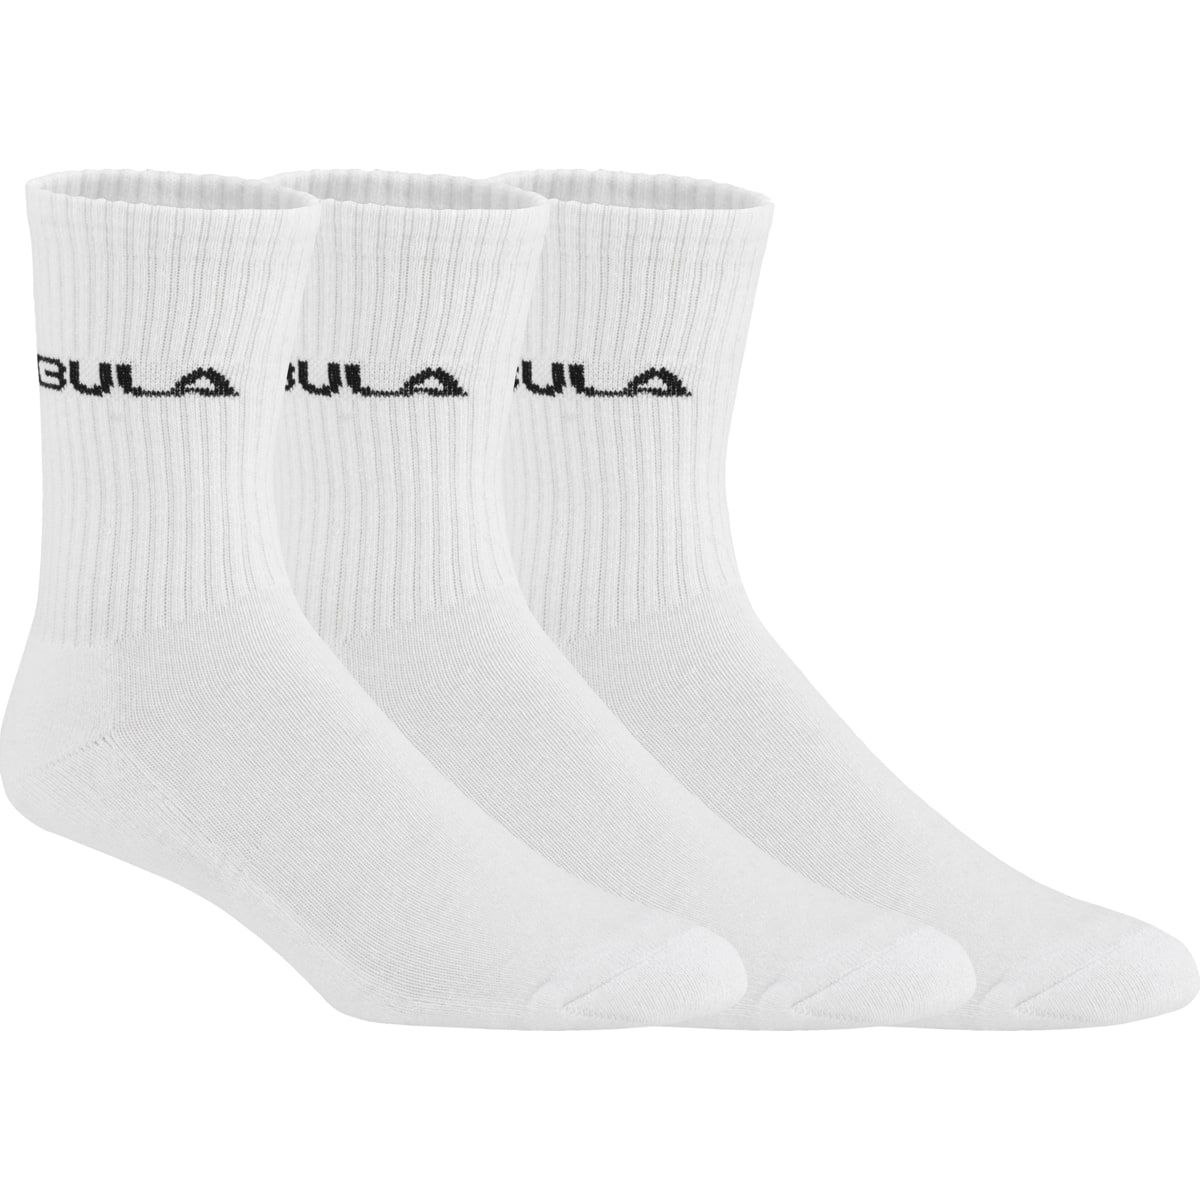 Bula Classic Socks 3pk White